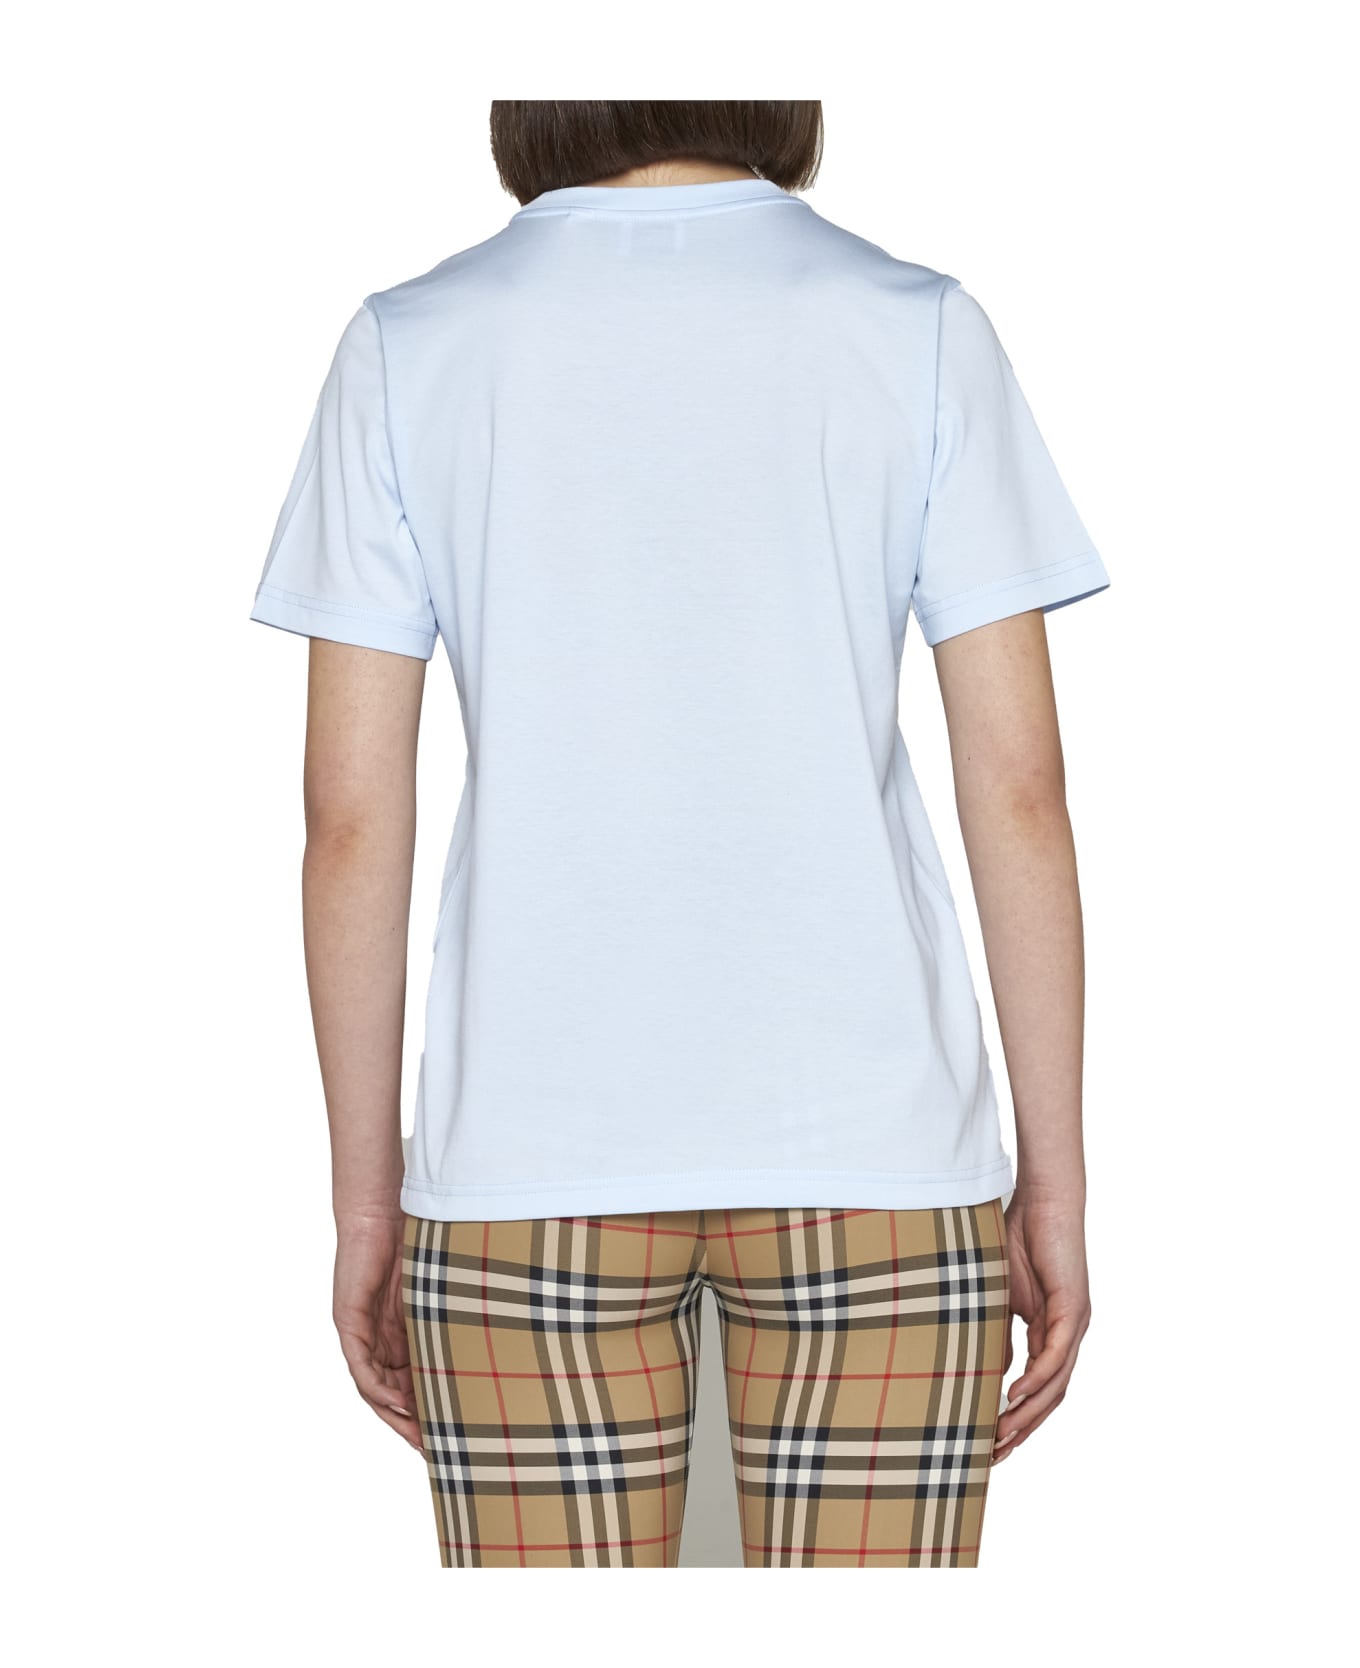 Burberry T-Shirt - Pale blue